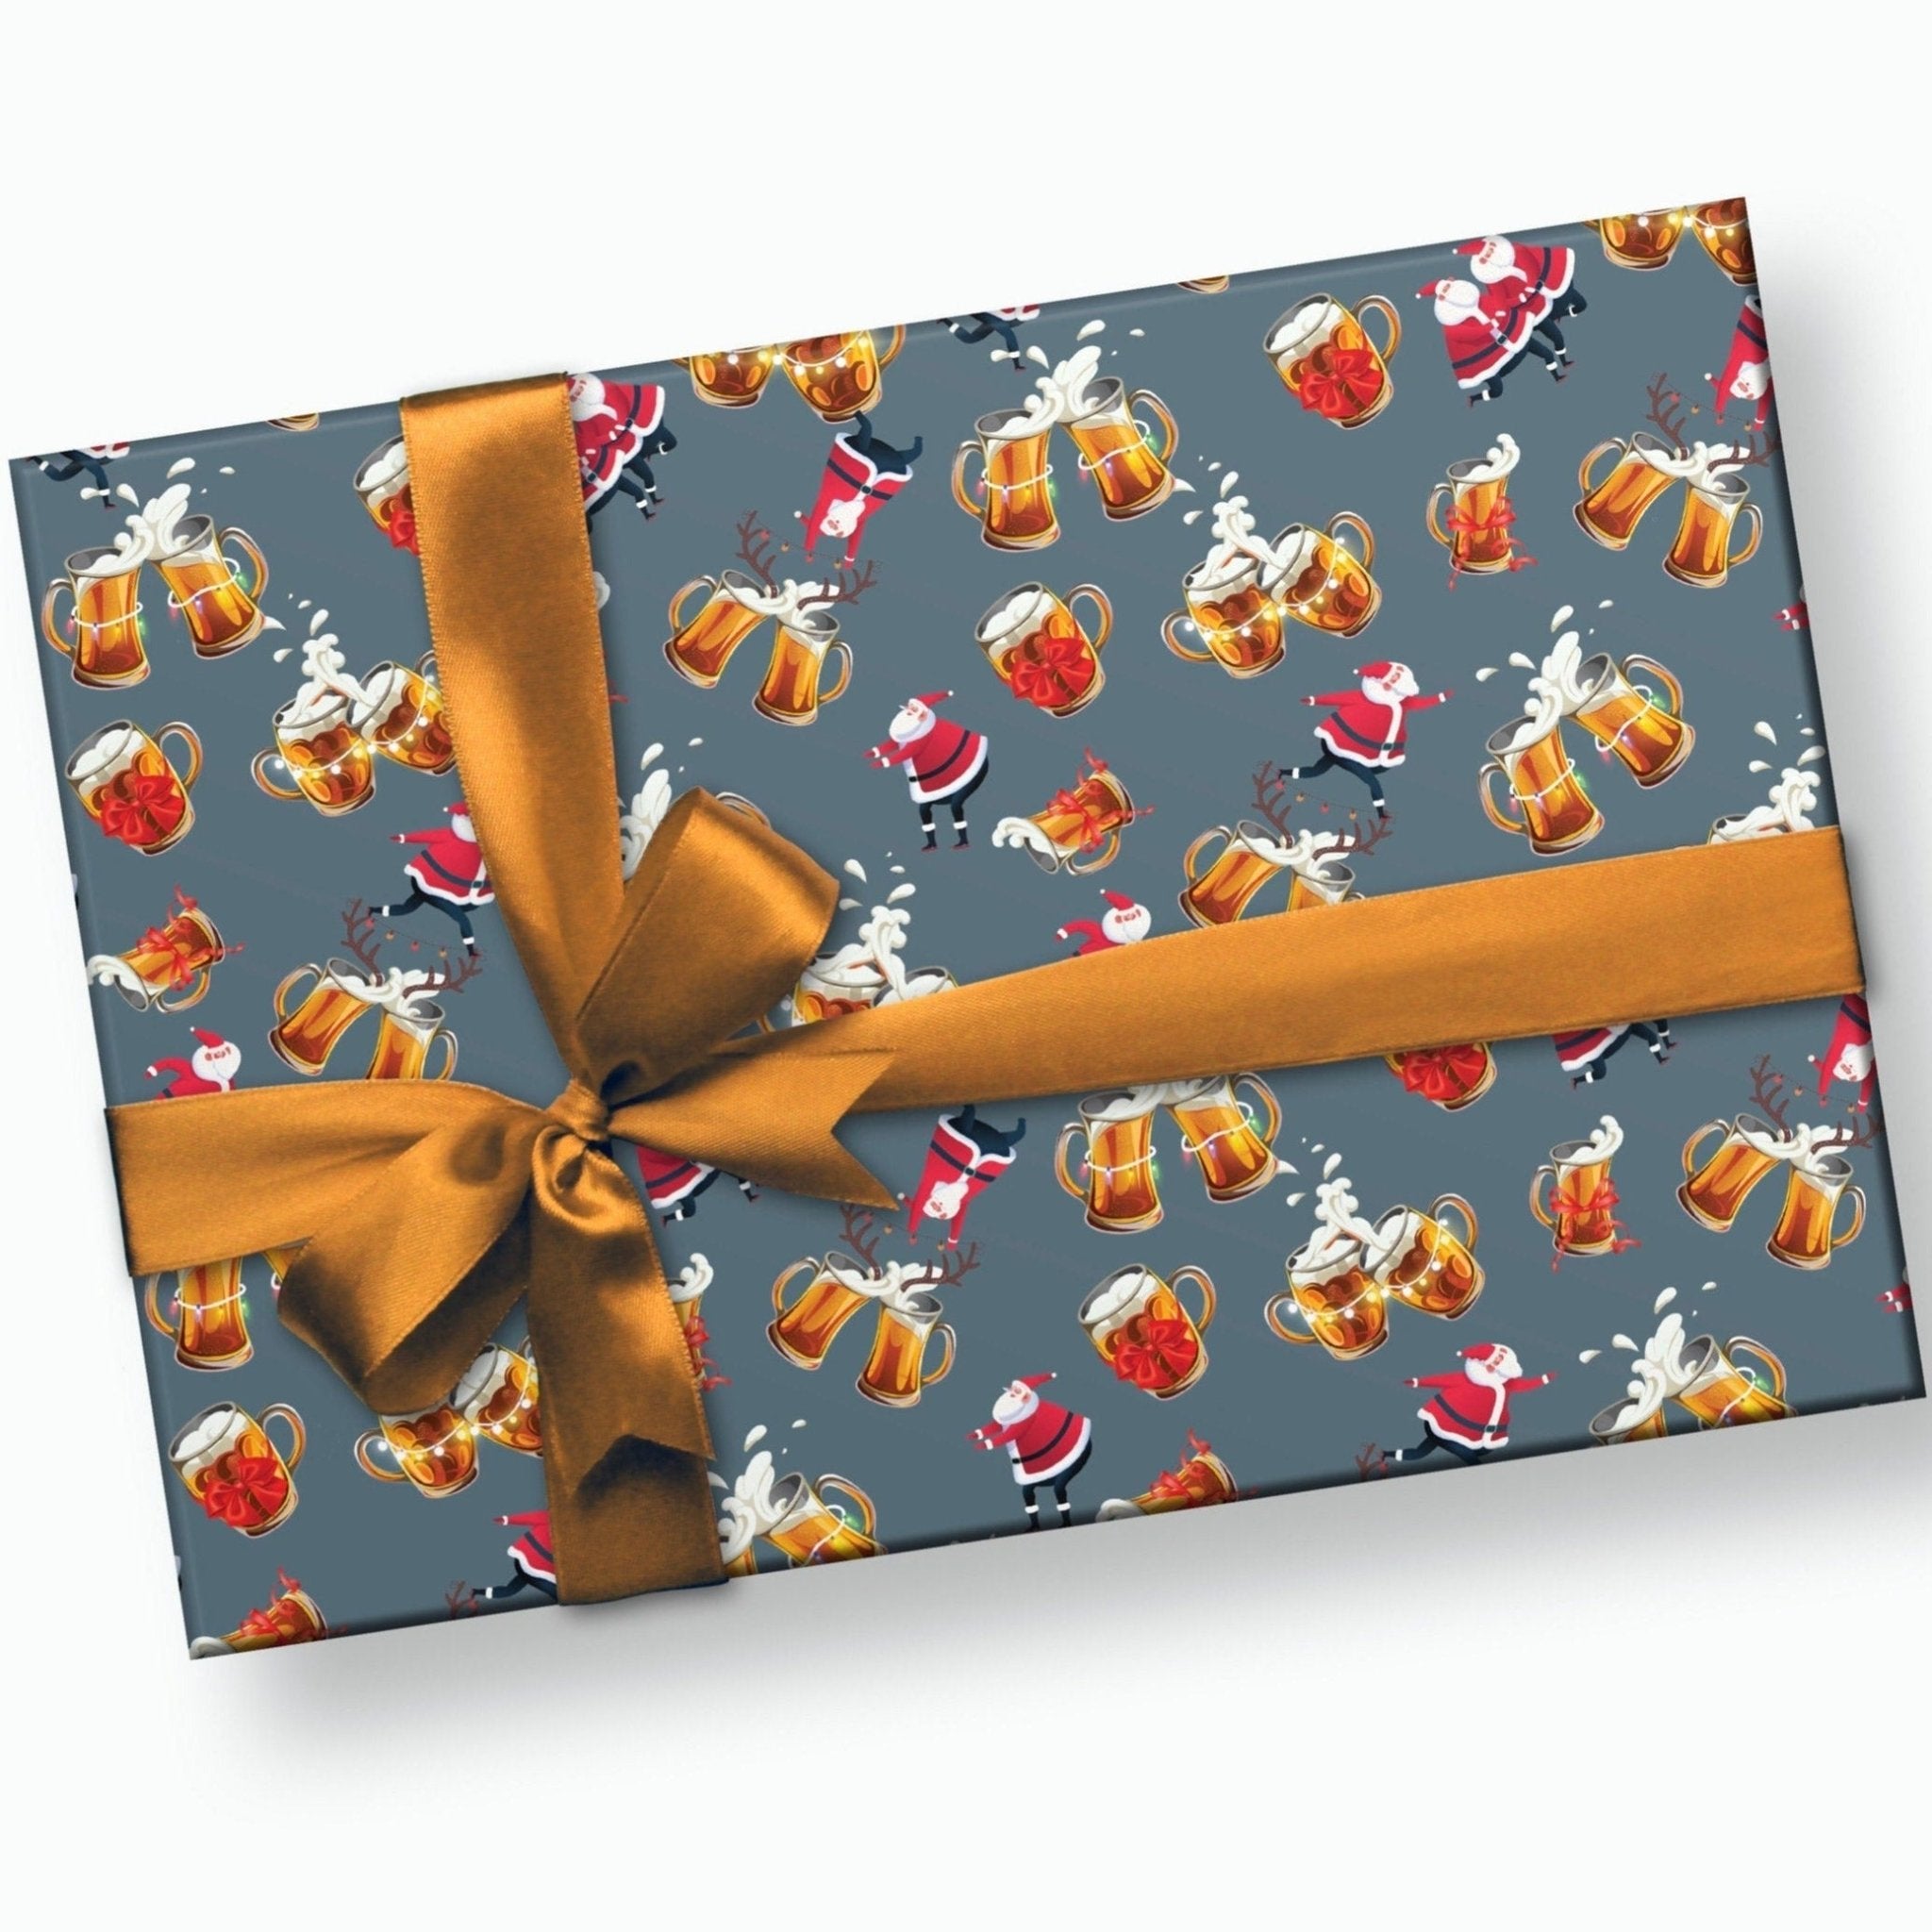 Dinosaur Christmas Gift Wrap - Stesha Party - animal, animal gw, christmas